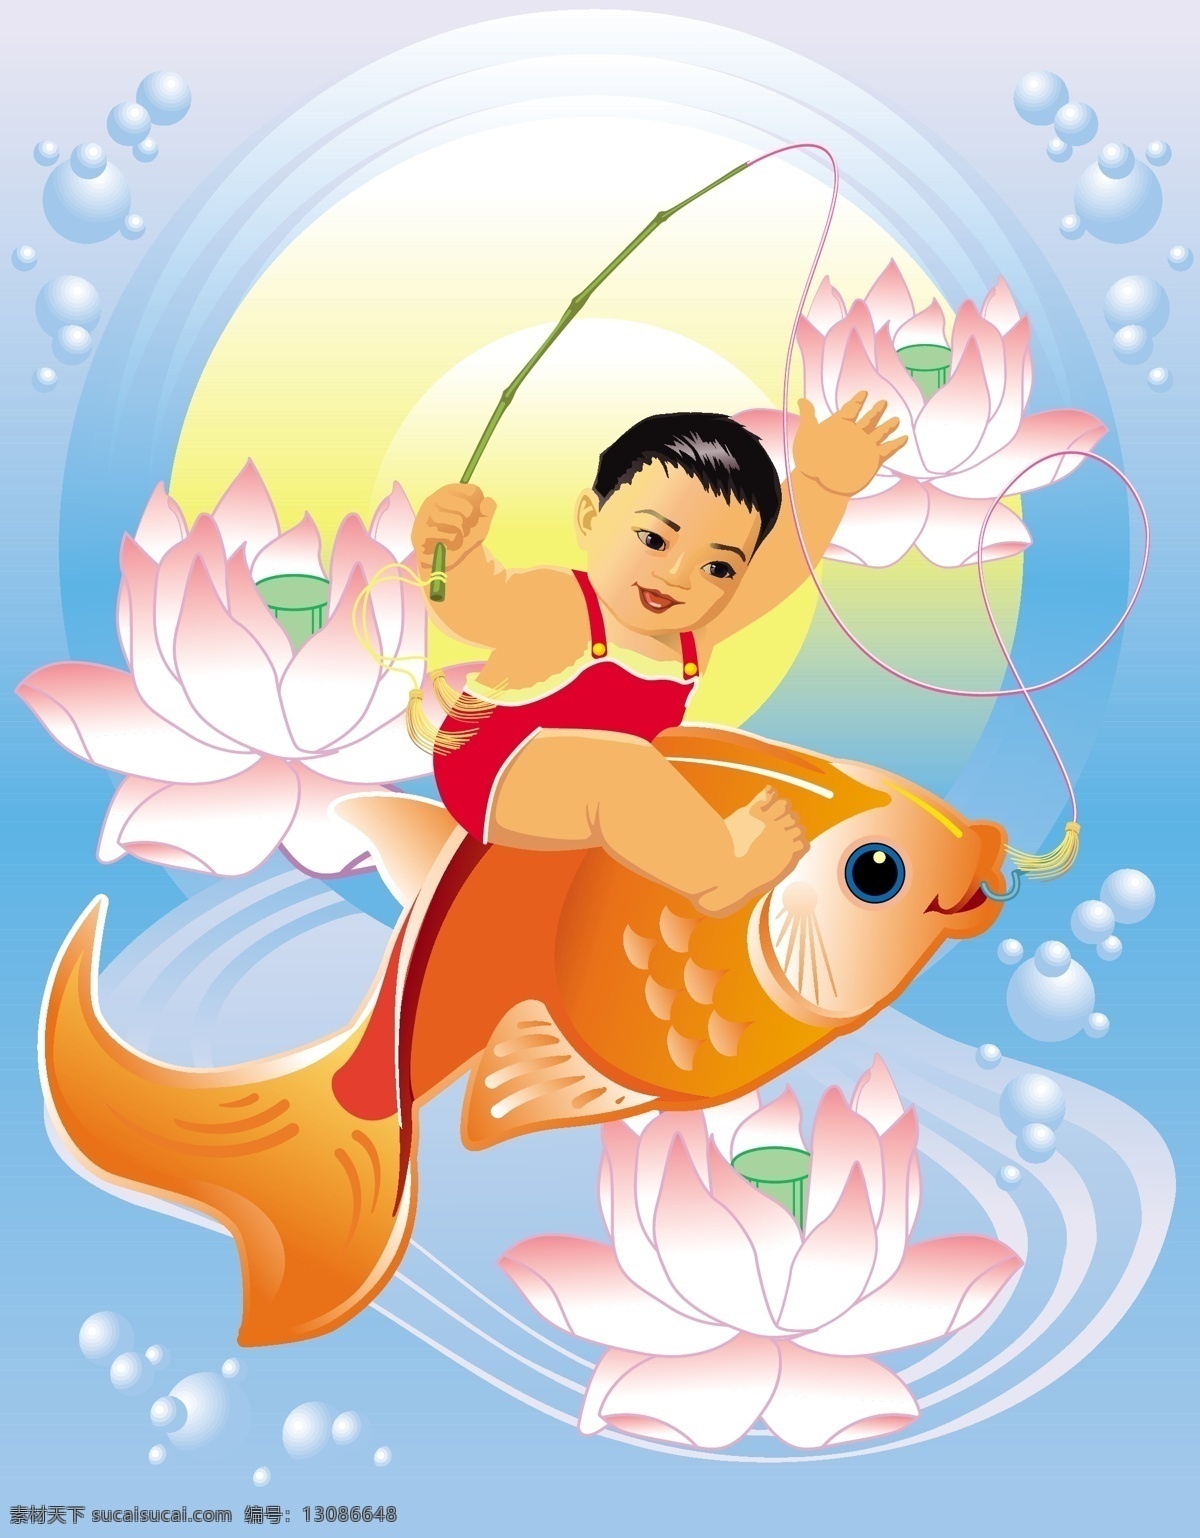 中国 风 吉祥 年画 矢量 钓鱼 孩子 金鱼 莲花 鱼 传统的中国风 向量 矢量图 其他矢量图